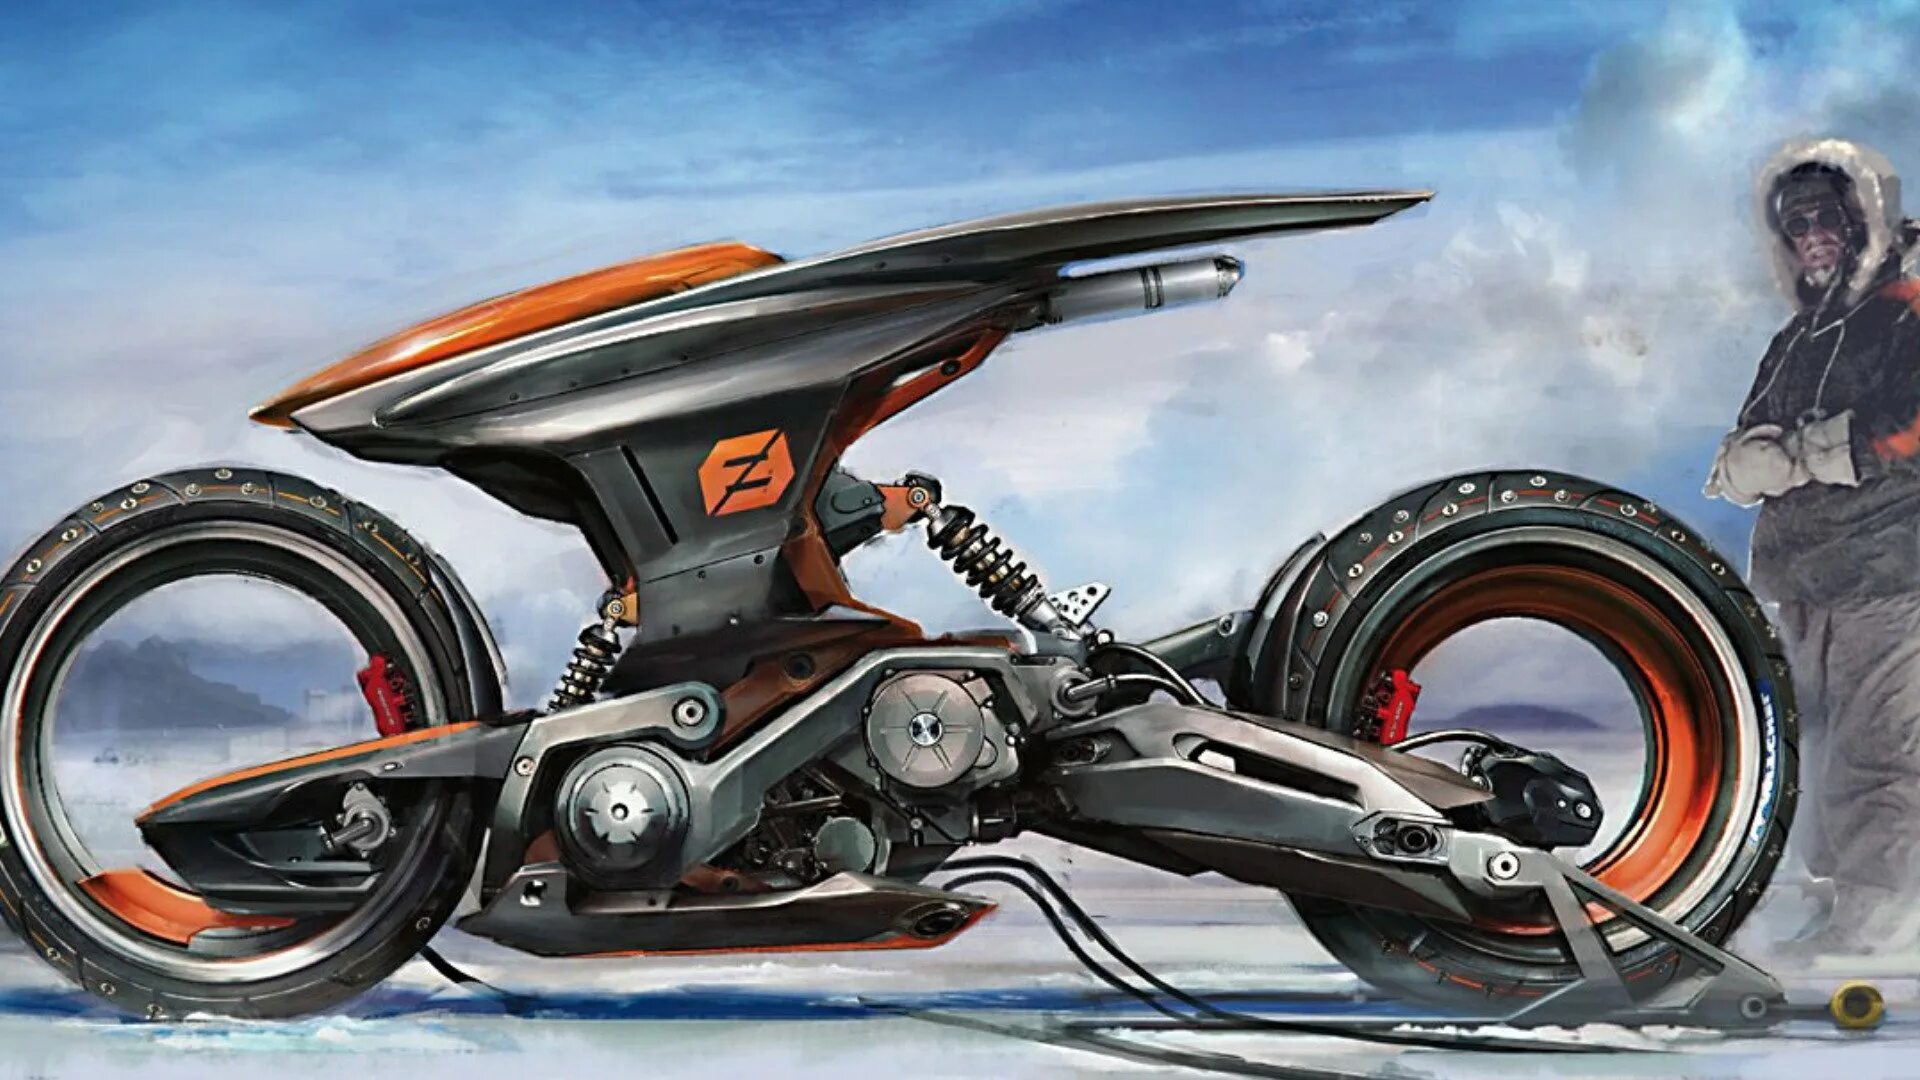 Мопед механическое транспортное. Мотоцикл scifi концепт Art. Футуристичный концепт мотоцикла. Мотоциклы будущего. Футуристический мотоцикл будущего.